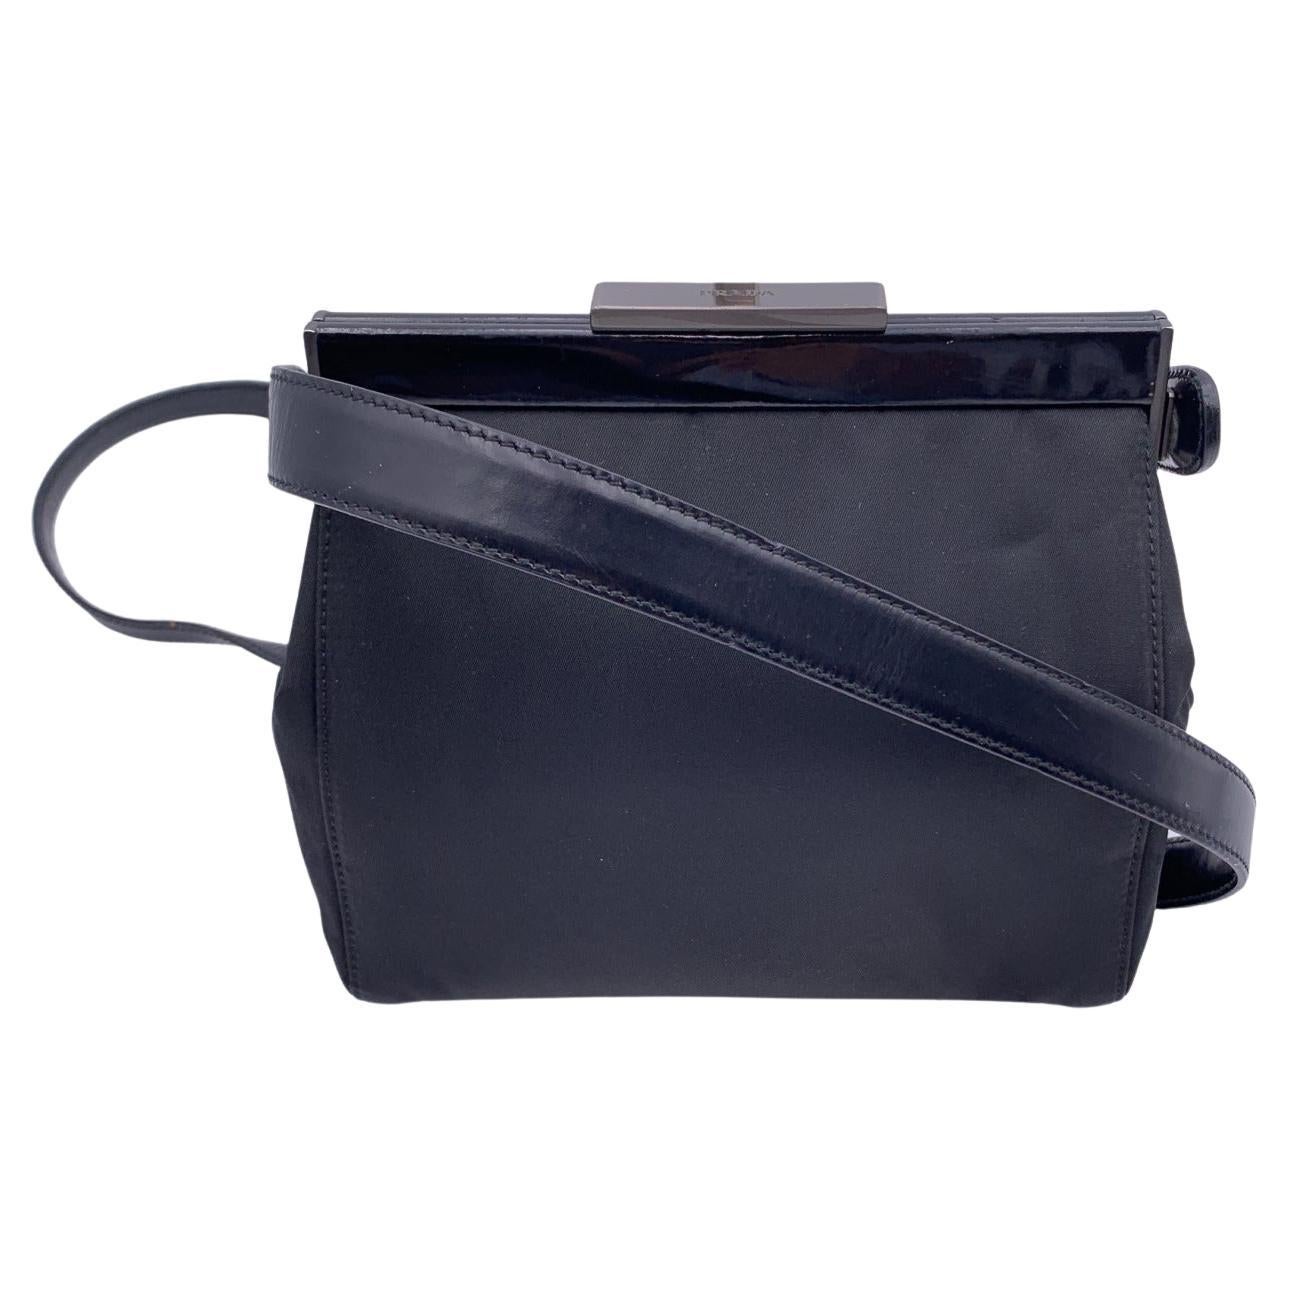 Prada Black Nylon Canvas and Leather Framed Shoulder Bag